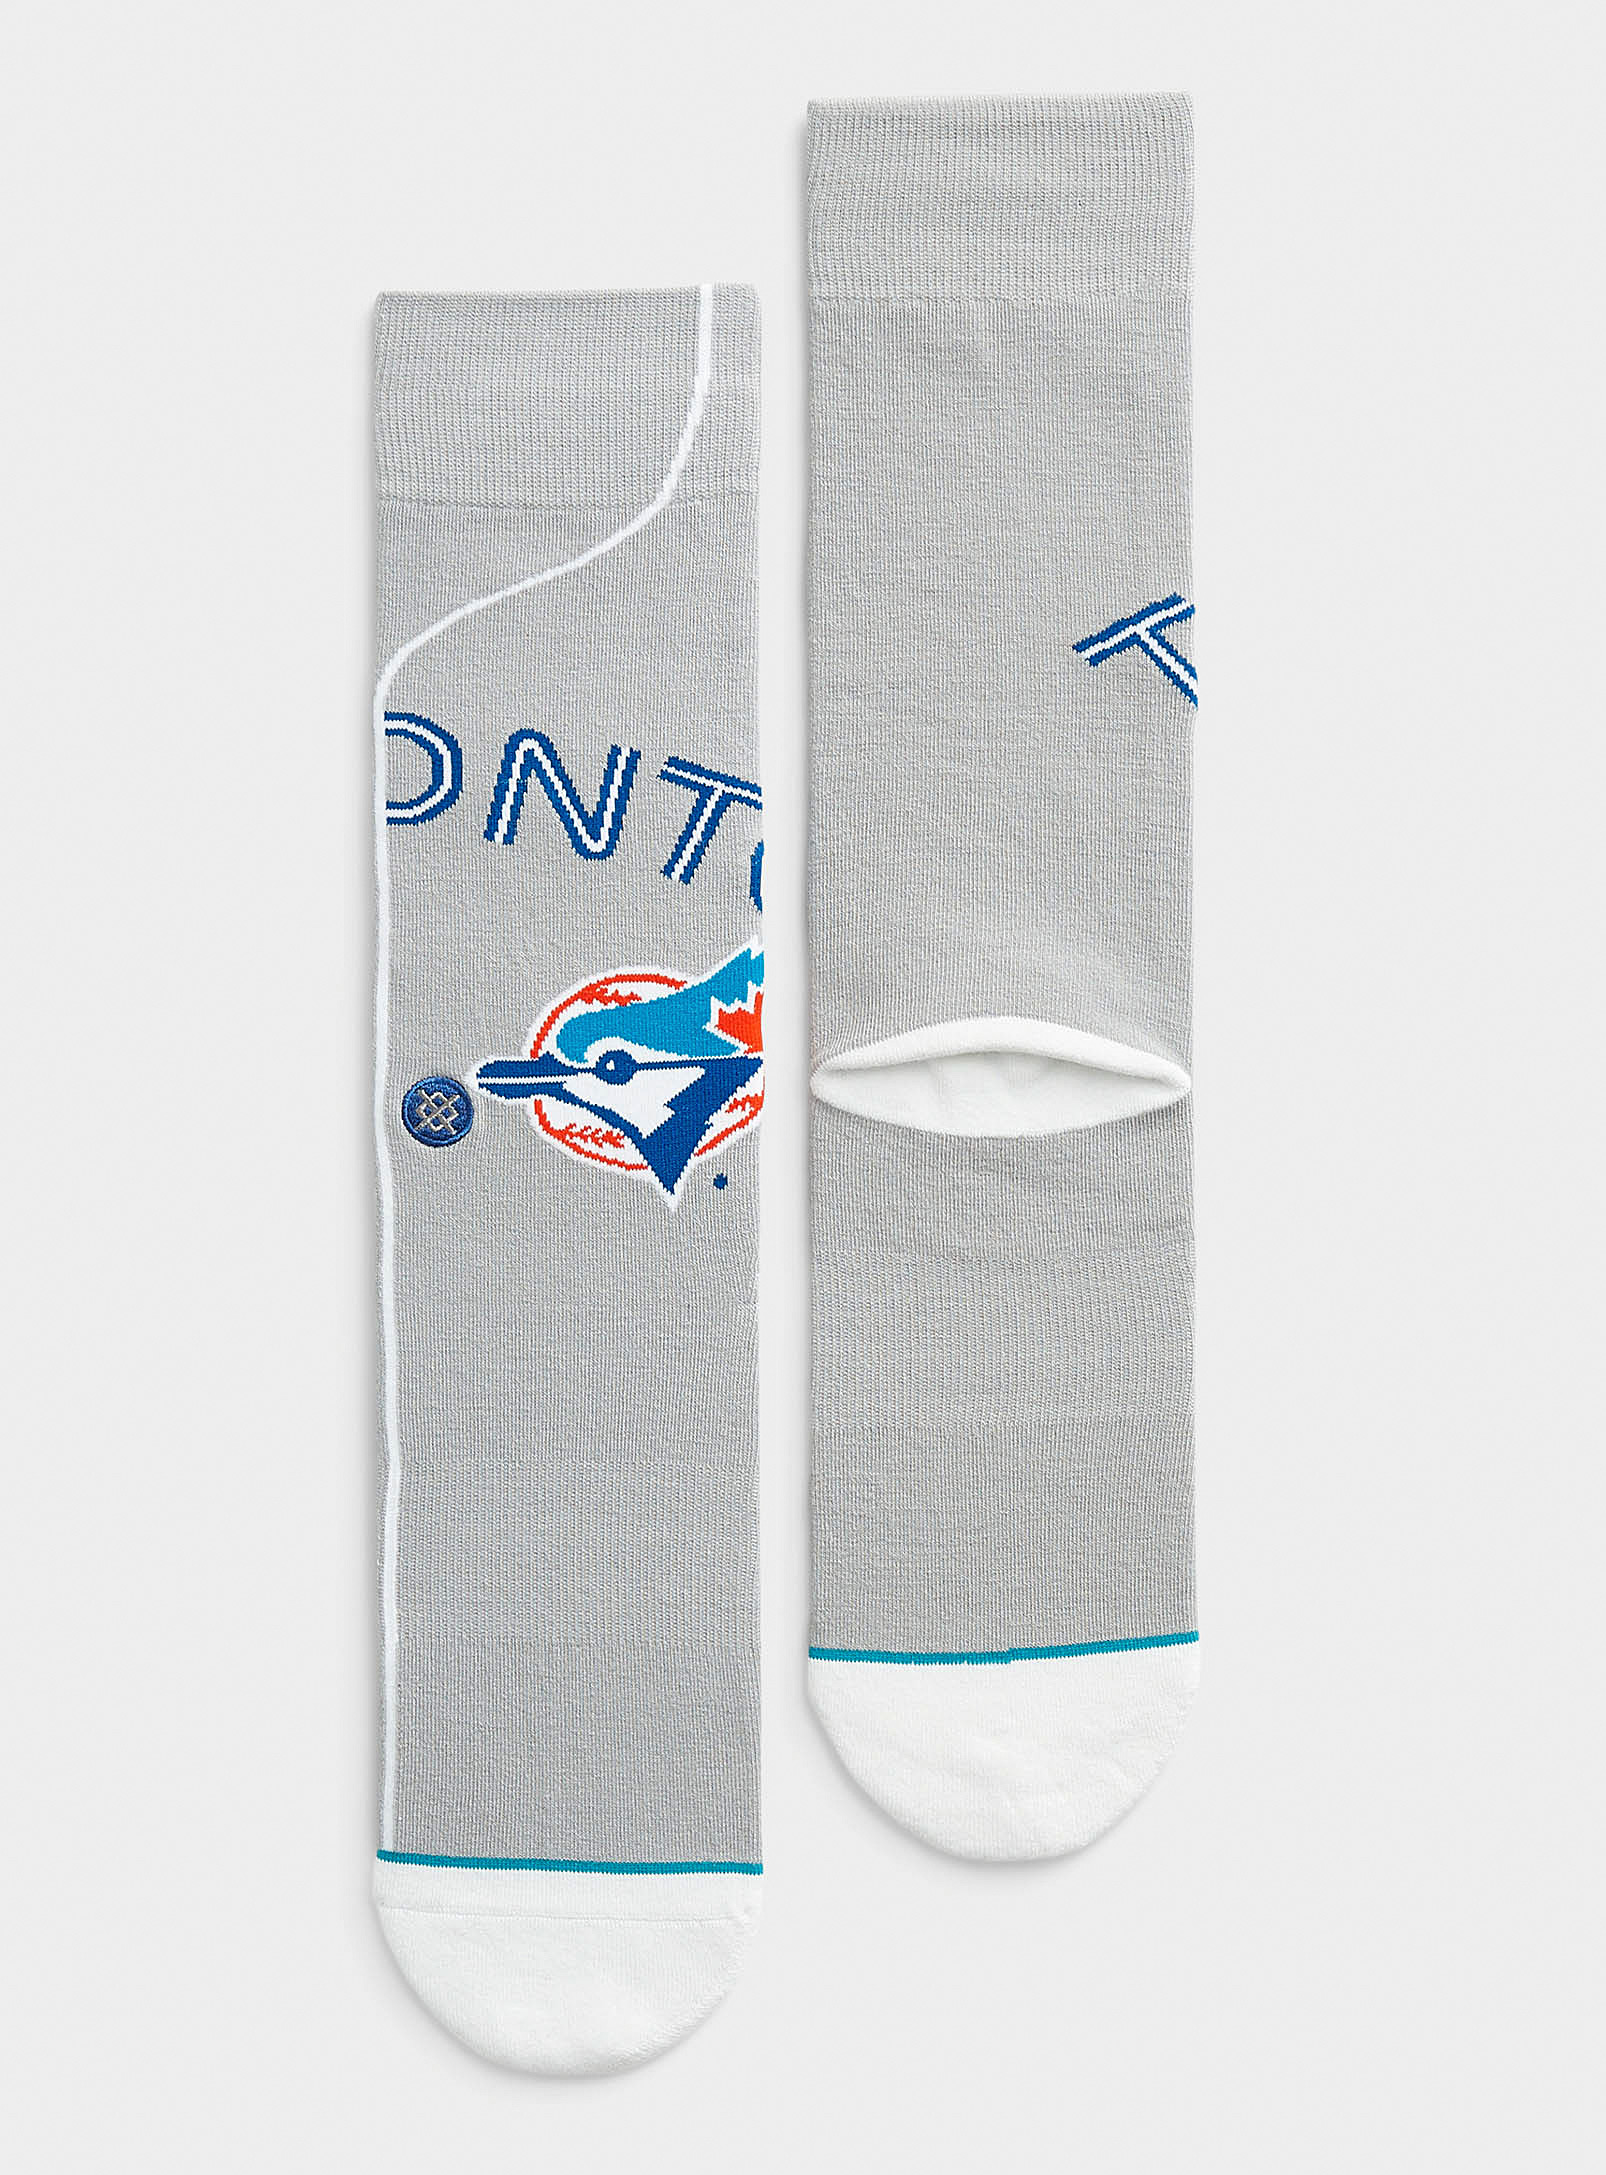 Stance Blue Jays Socks In Patterned Blue